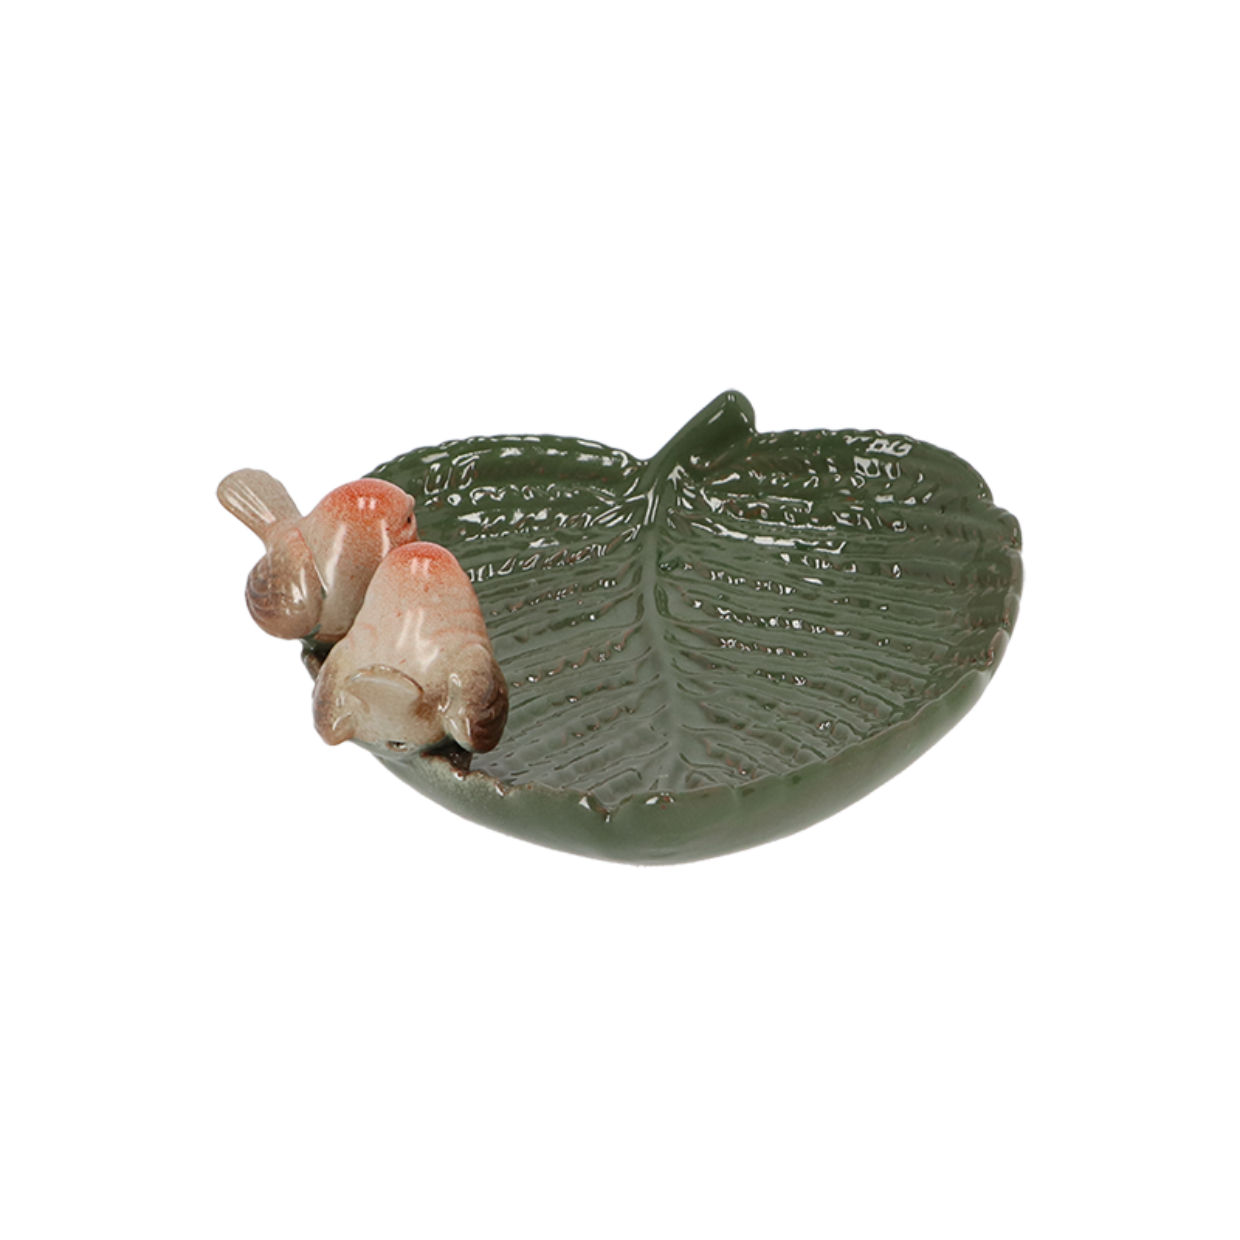 Ceramic Leaf Shaped Bird Bath With Birds